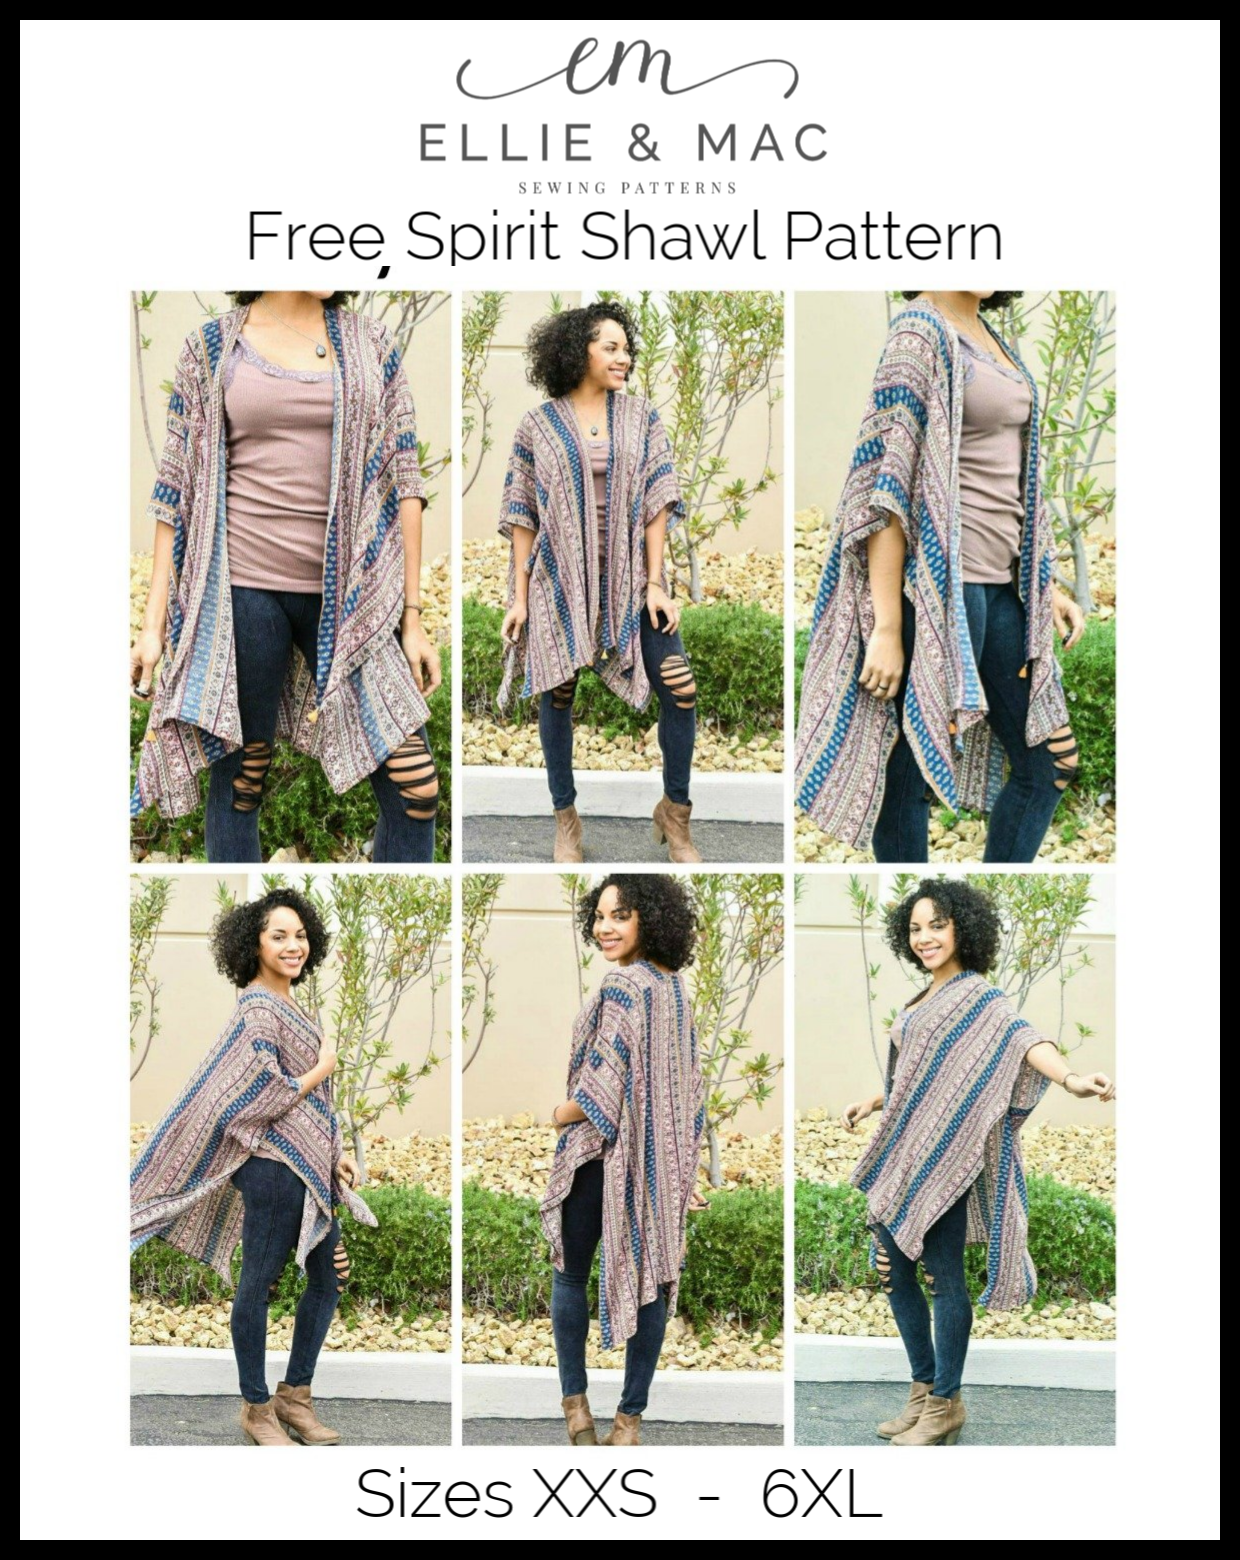 Free Spirit Shawl Pattern